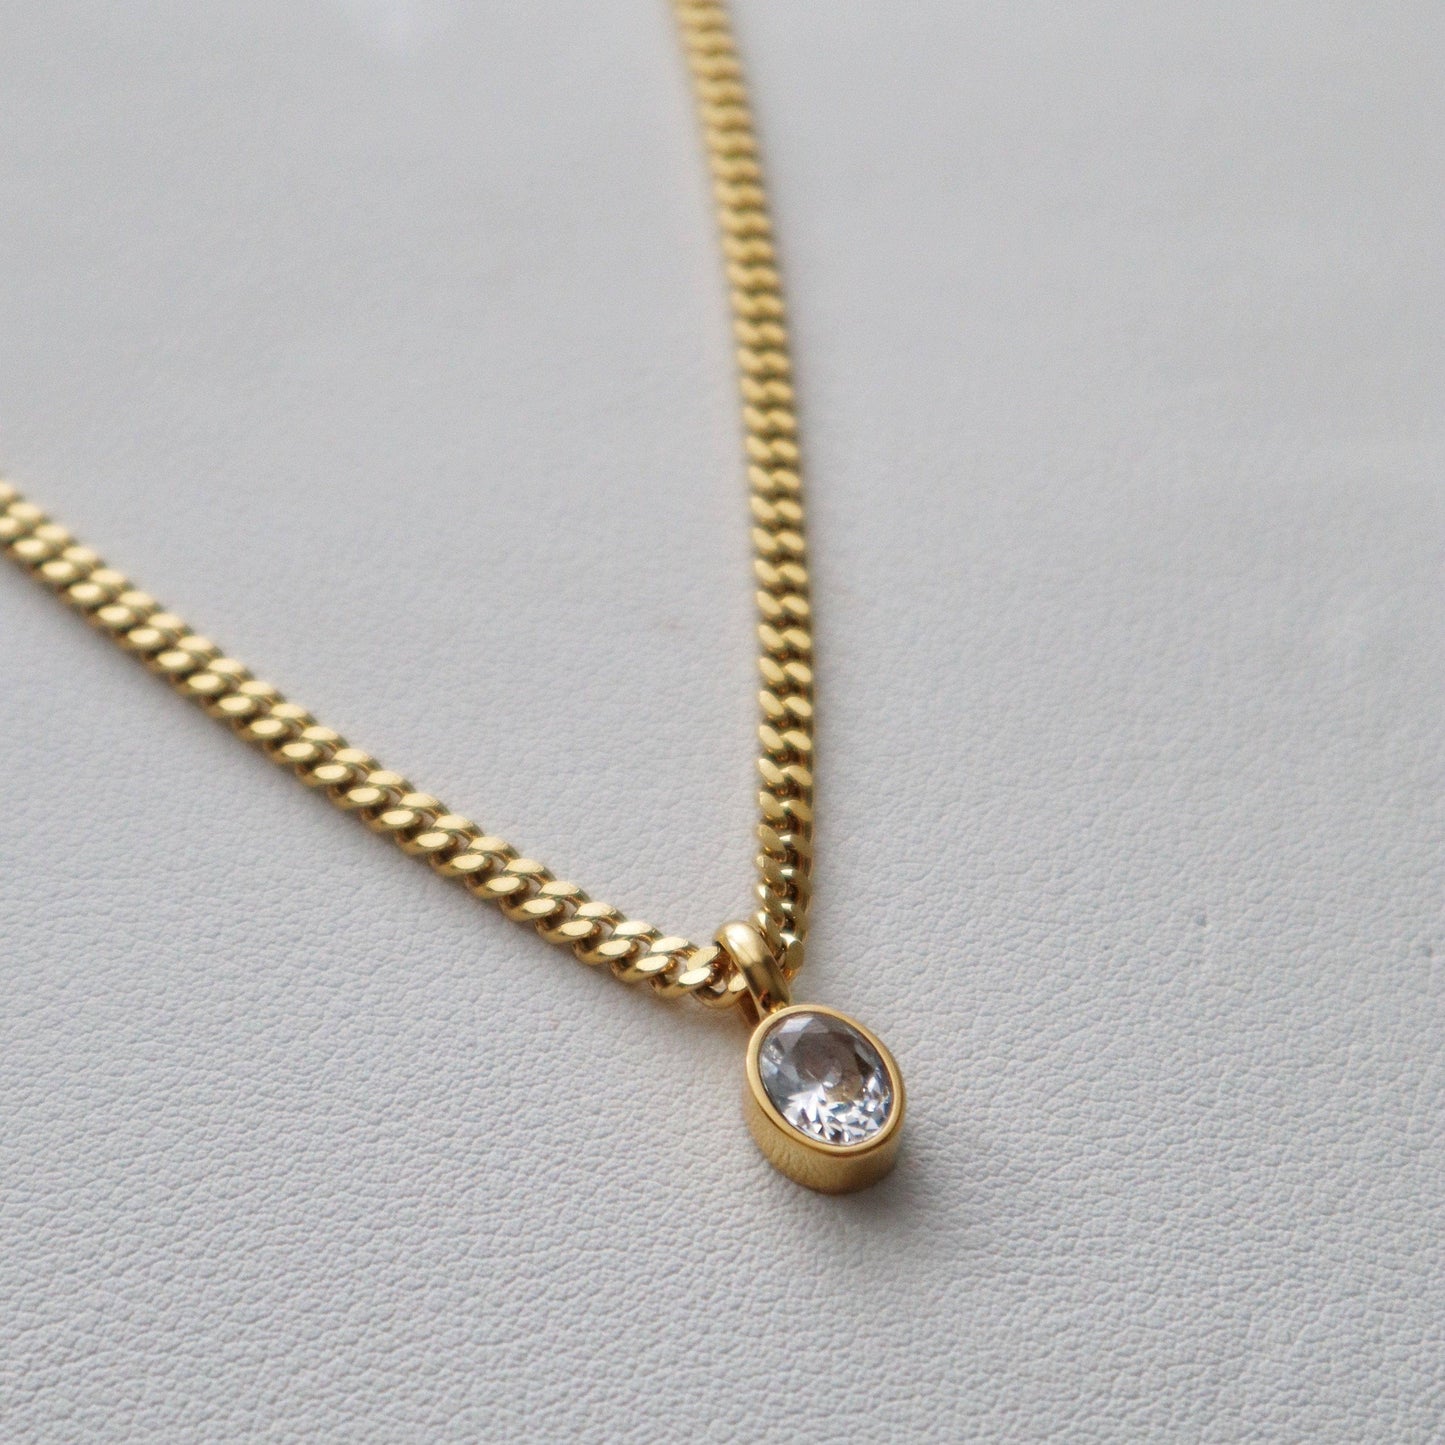 JESSA Jewelry - Oval CZ Chain Necklace